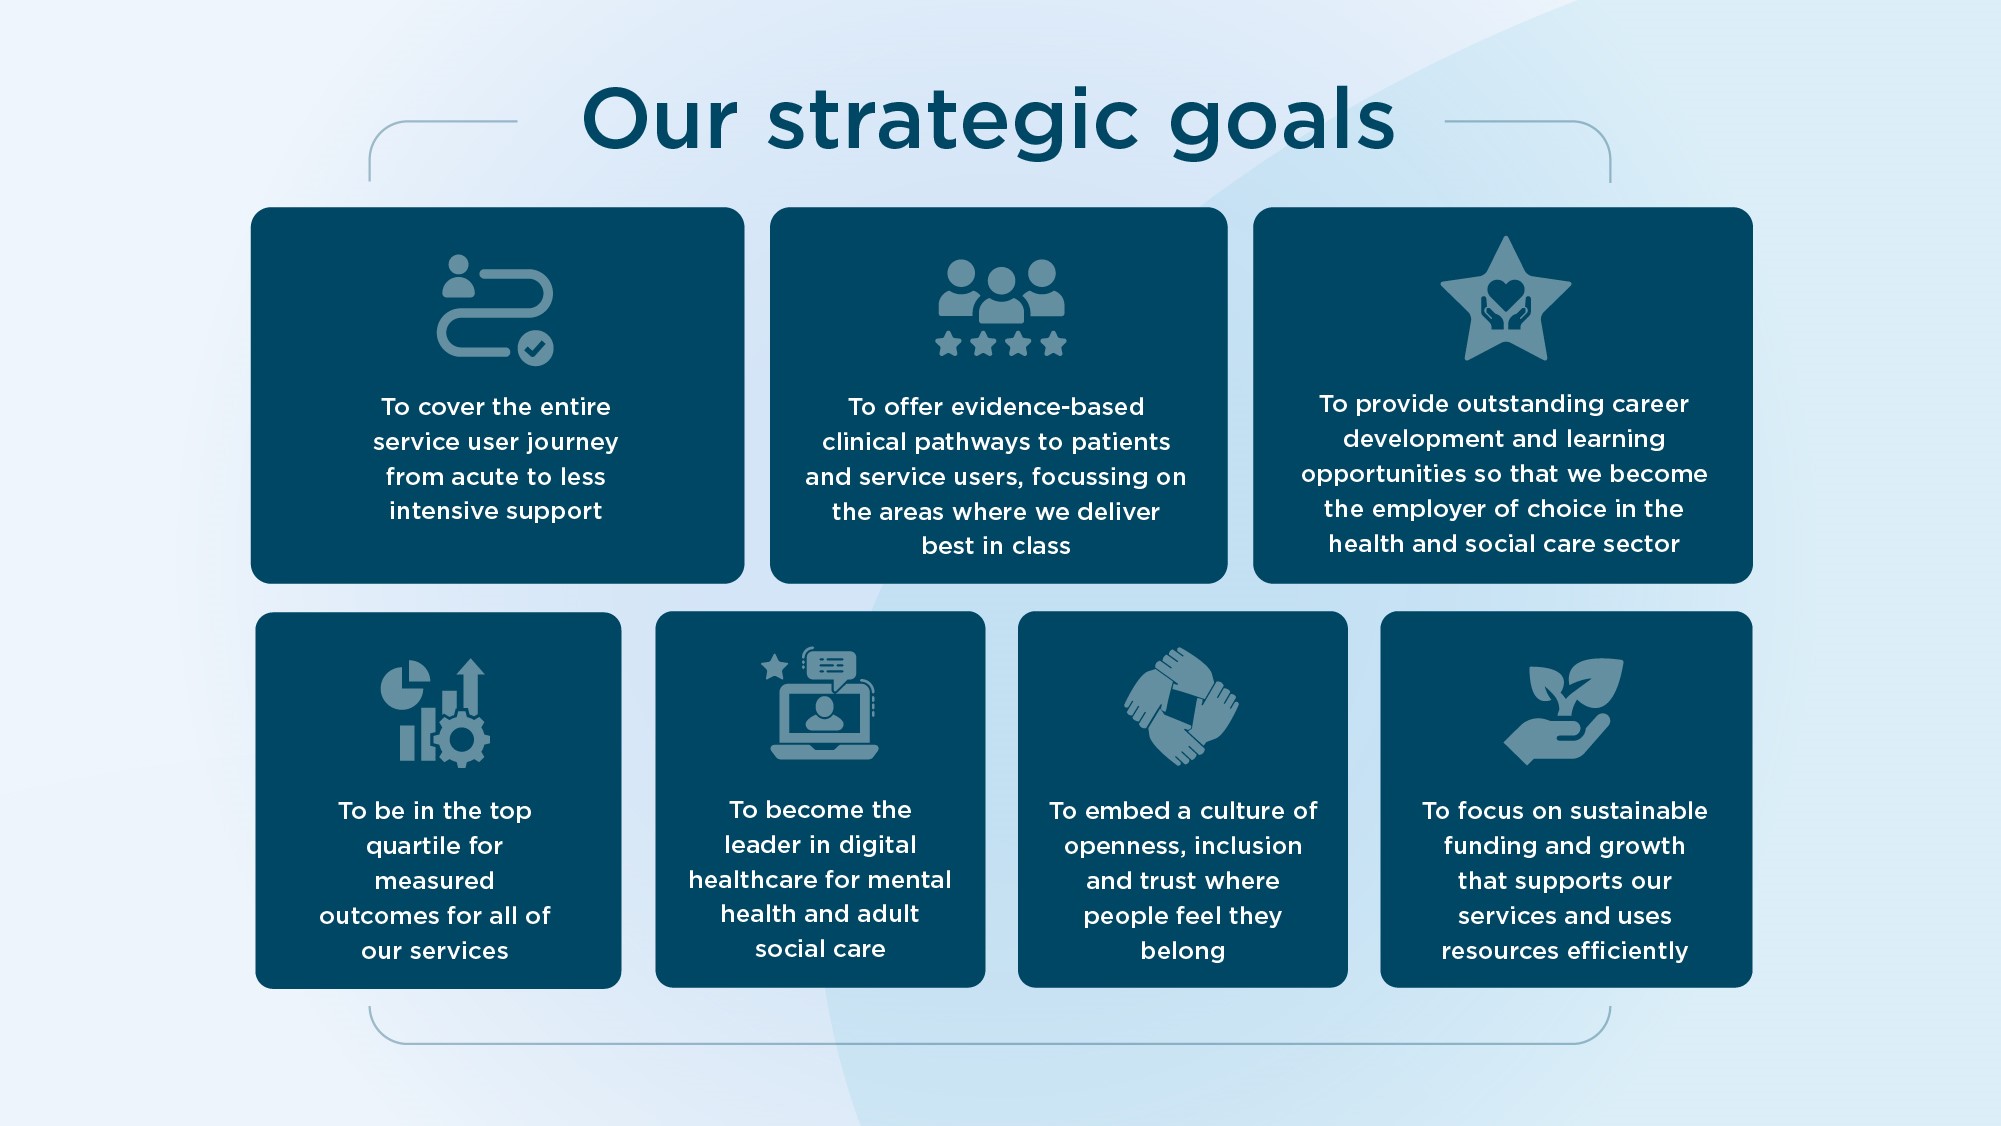 Priory's strategic goals